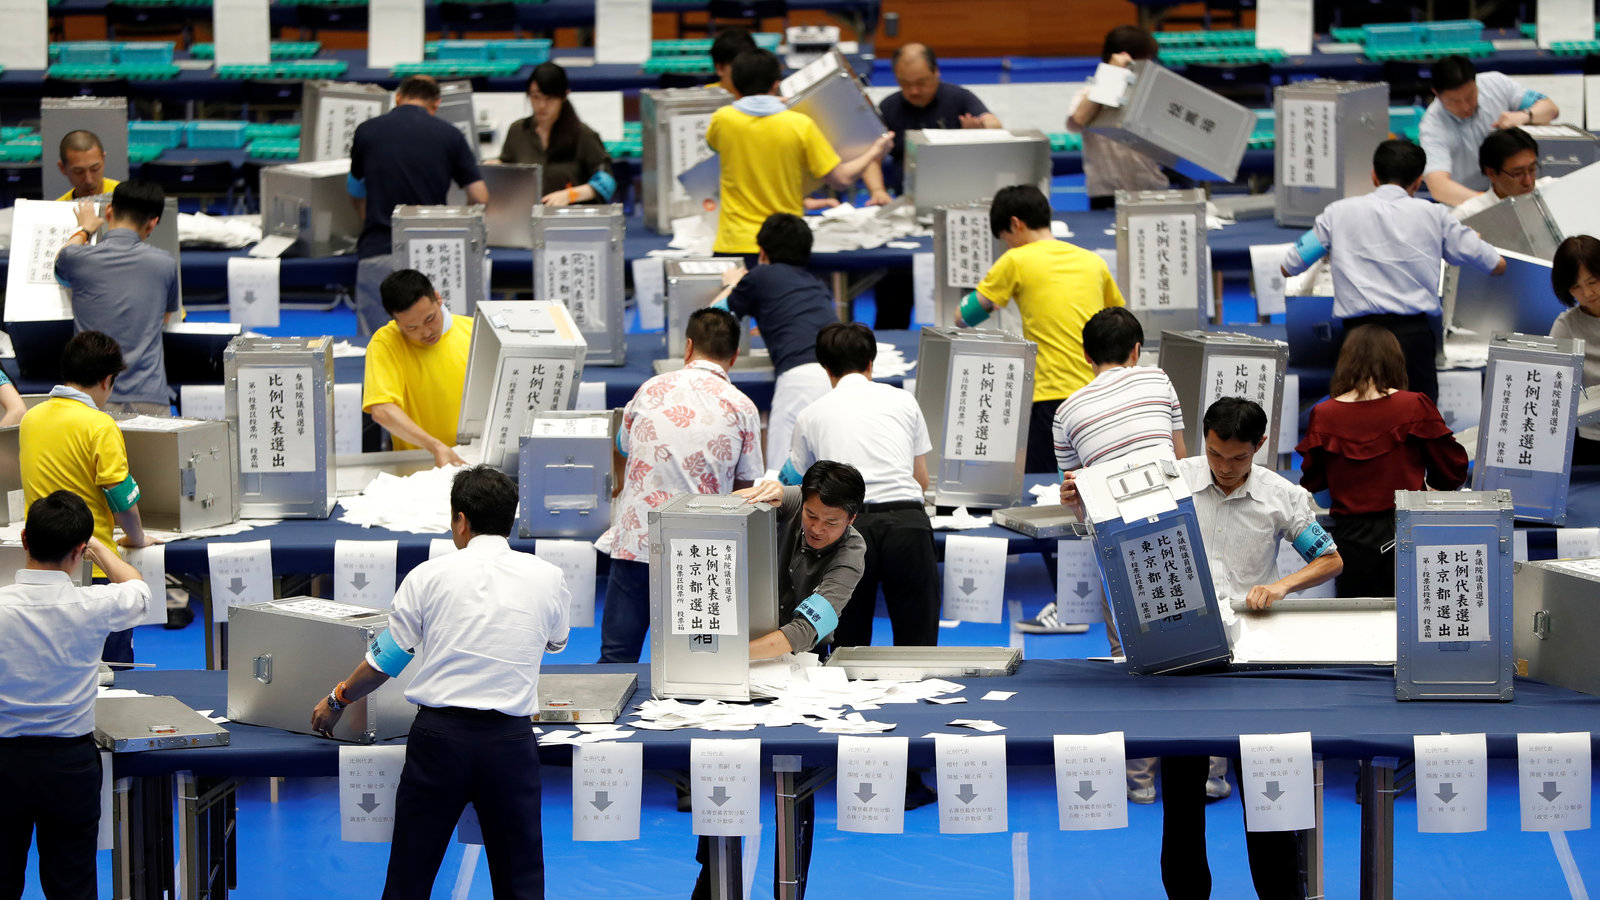 Ιαπωνία-Εκλογές: Ο κυβερνητικός συνασπισμός αναμένεται να διατηρήσει την πλειοψηφία στην άνω βουλή